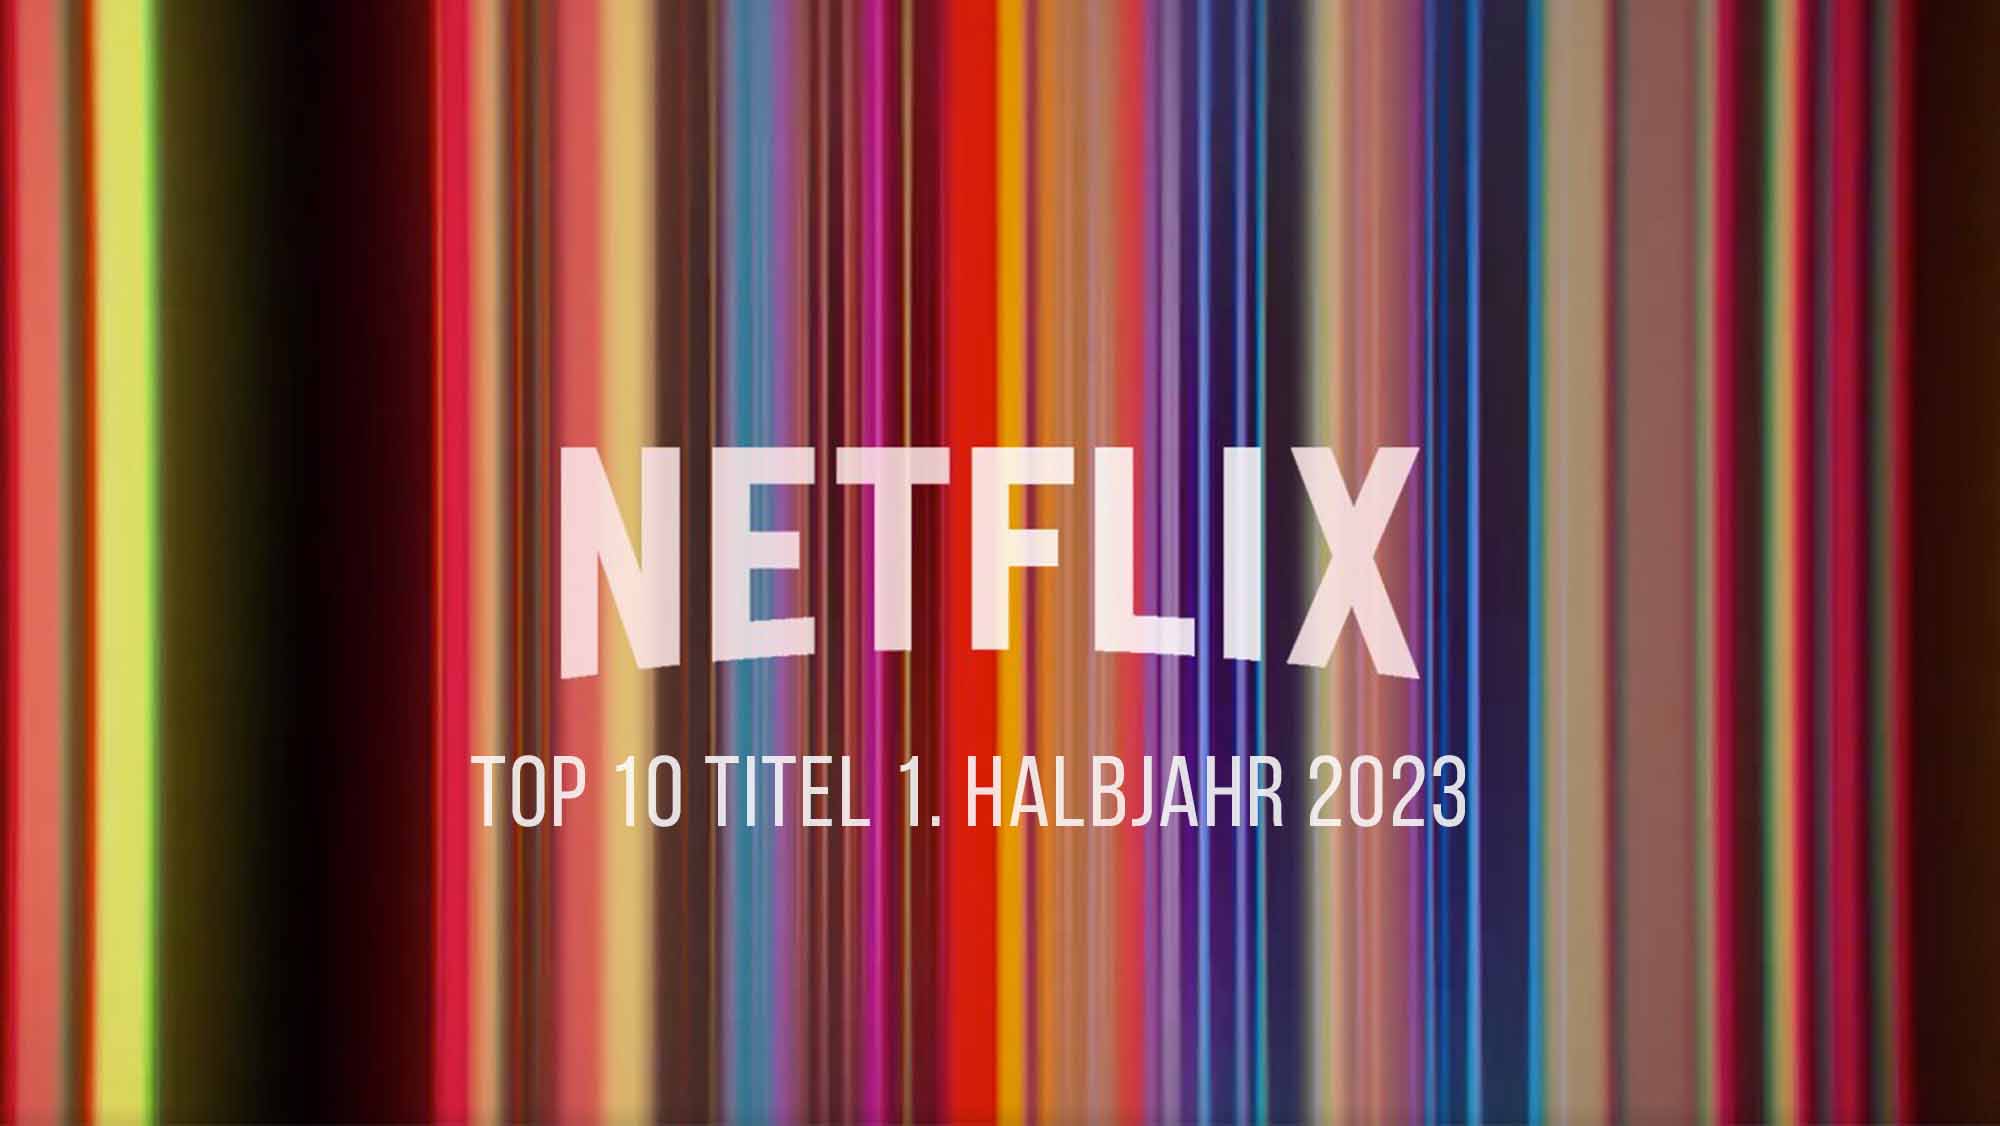 Netflix-Originals-logo-top10-titel-1-halbjahr-2023